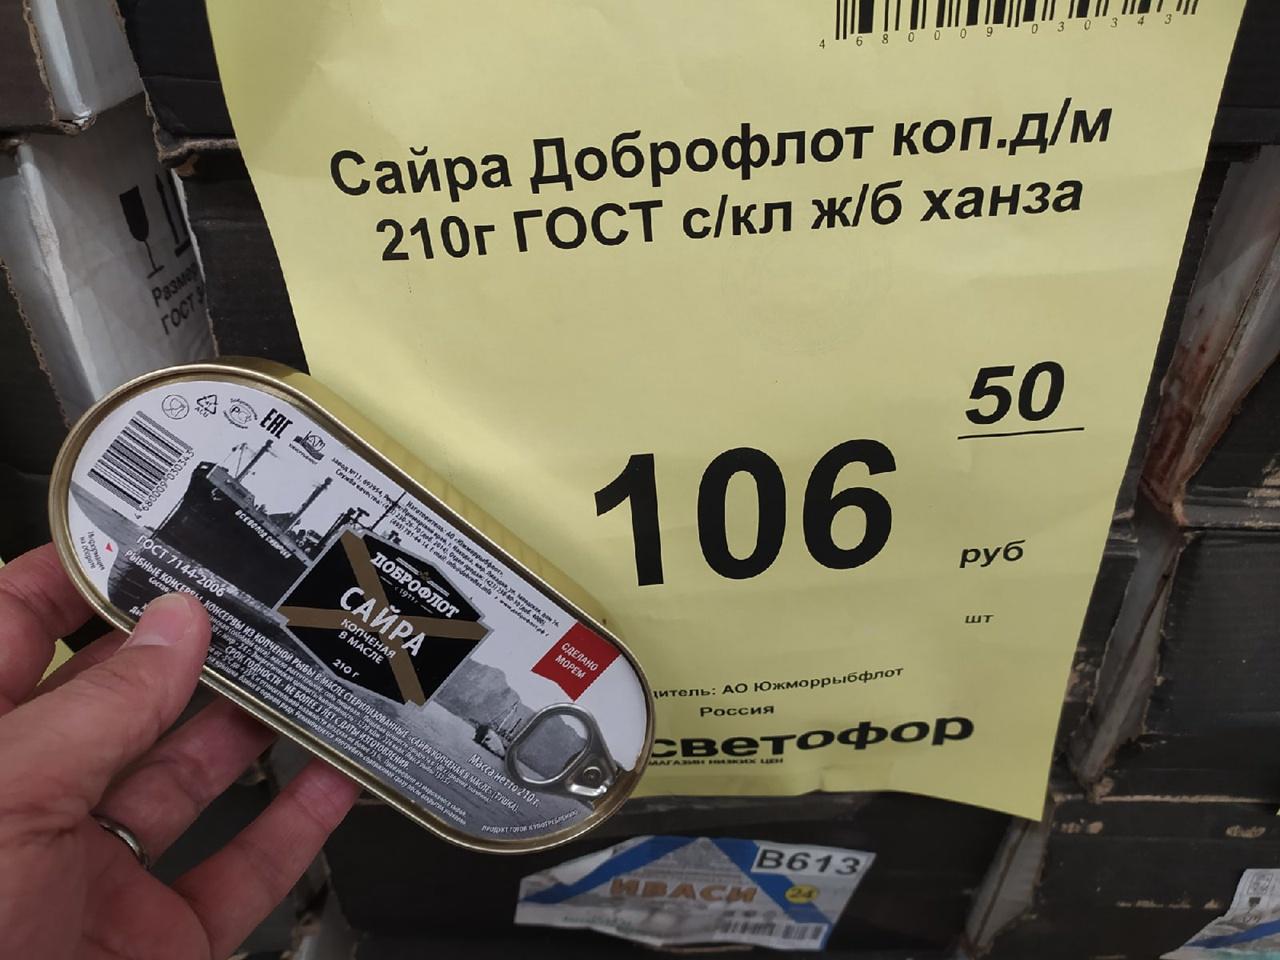 Фото Рыба моей мечты: жителей Новосибирска удивила сайра за 210 рублей 5